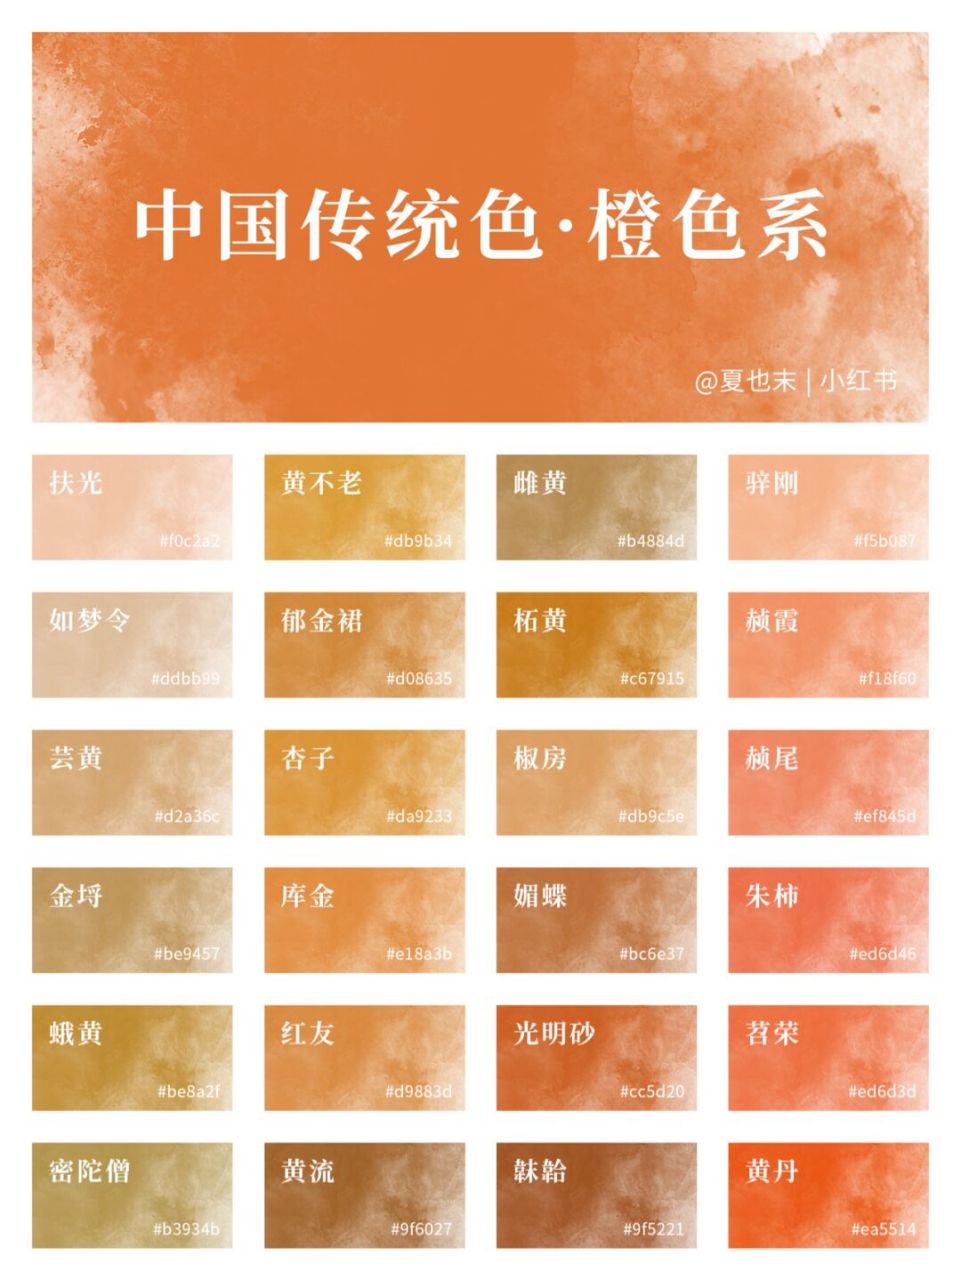 热情的颜色吖,是暖色系中最温柔的颜色哇～ 中国传统色色卡持续更新中